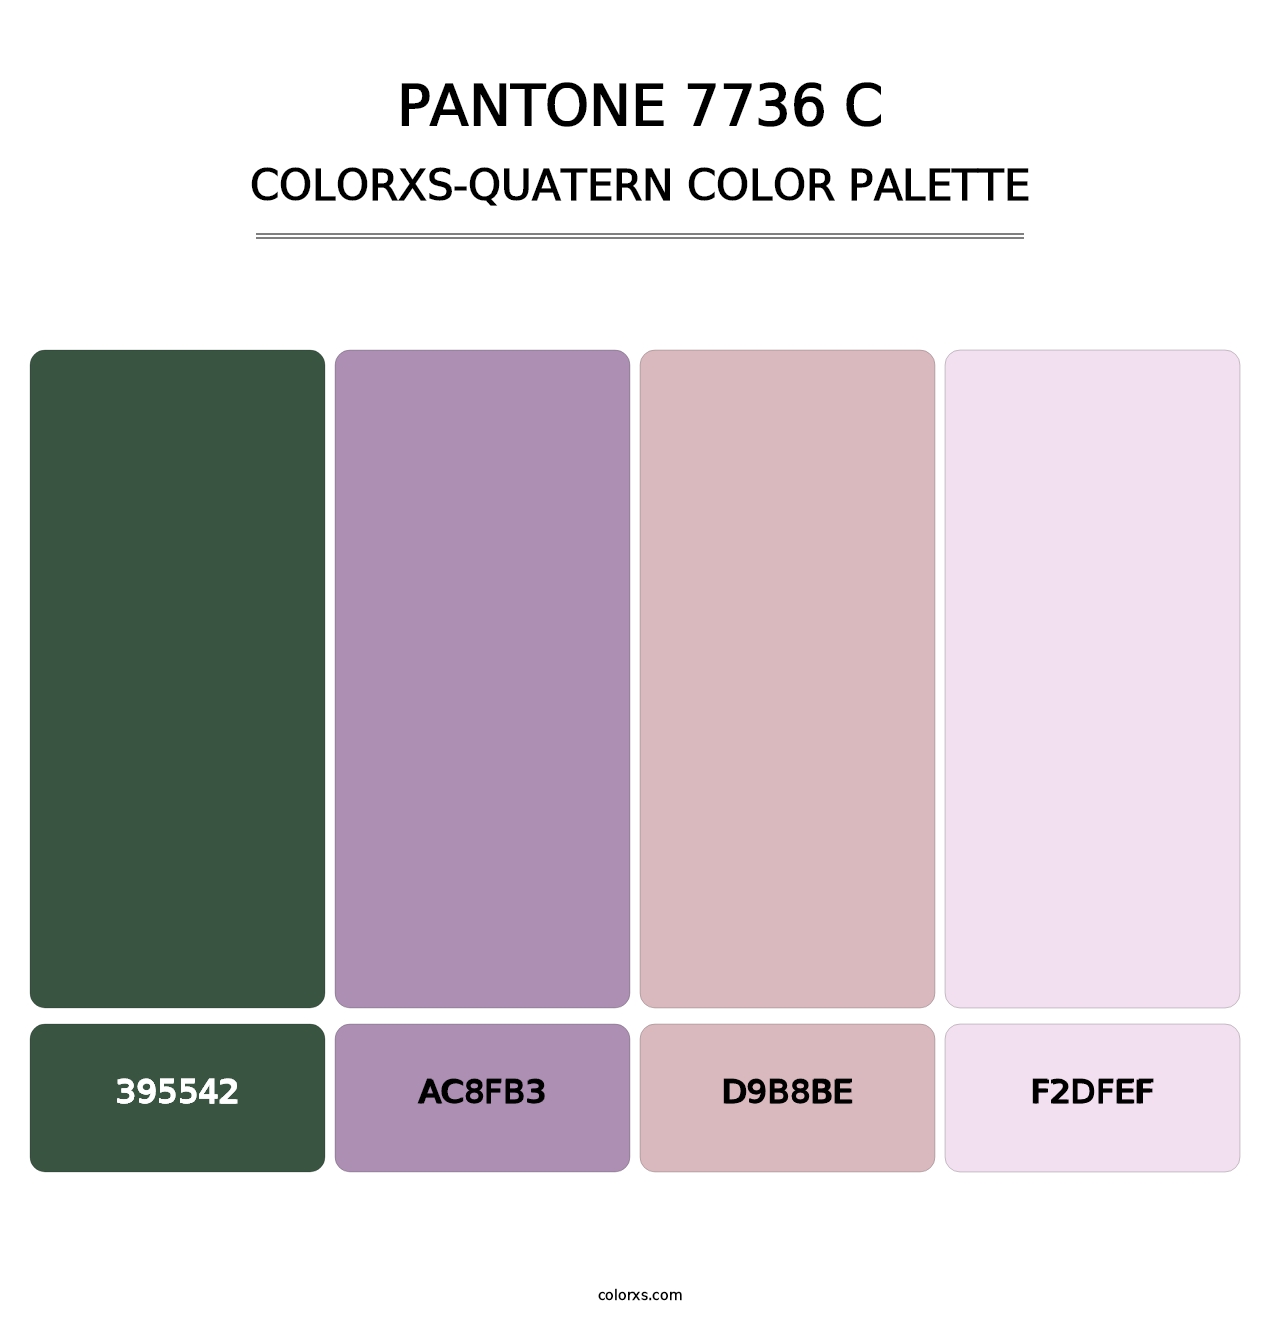 PANTONE 7736 C - Colorxs Quatern Palette